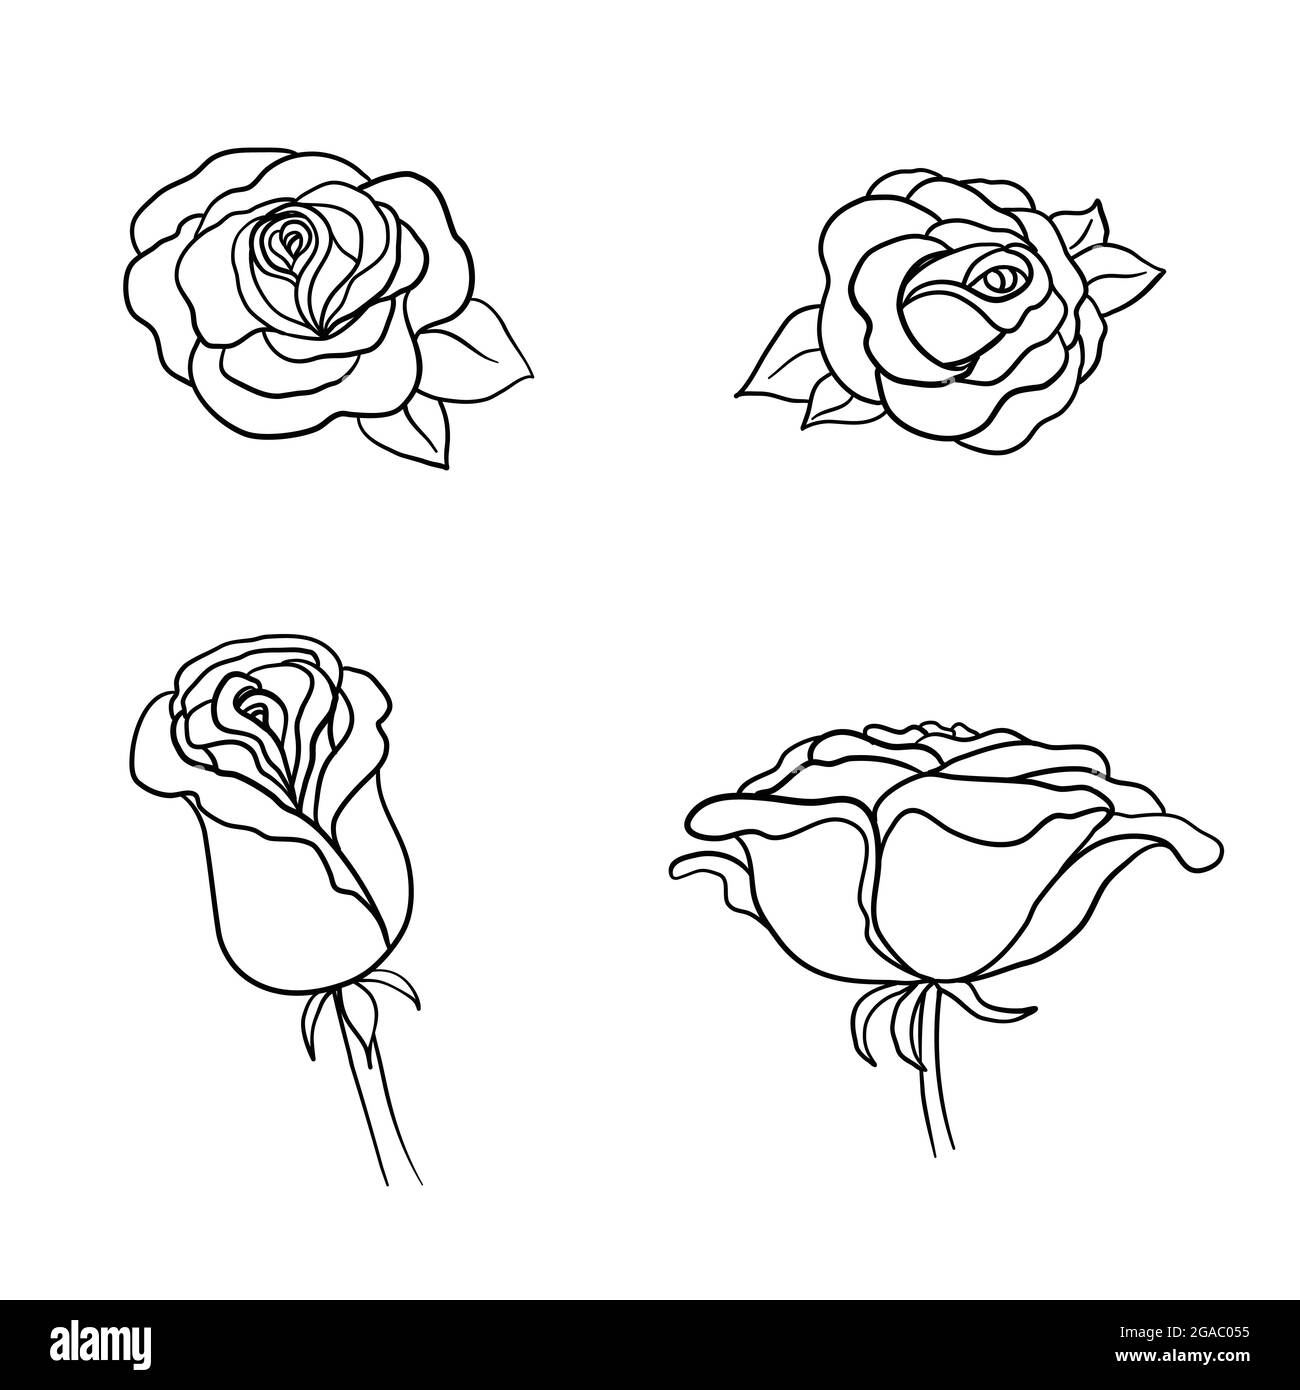 Rose Painting Images - Free Download on Freepik